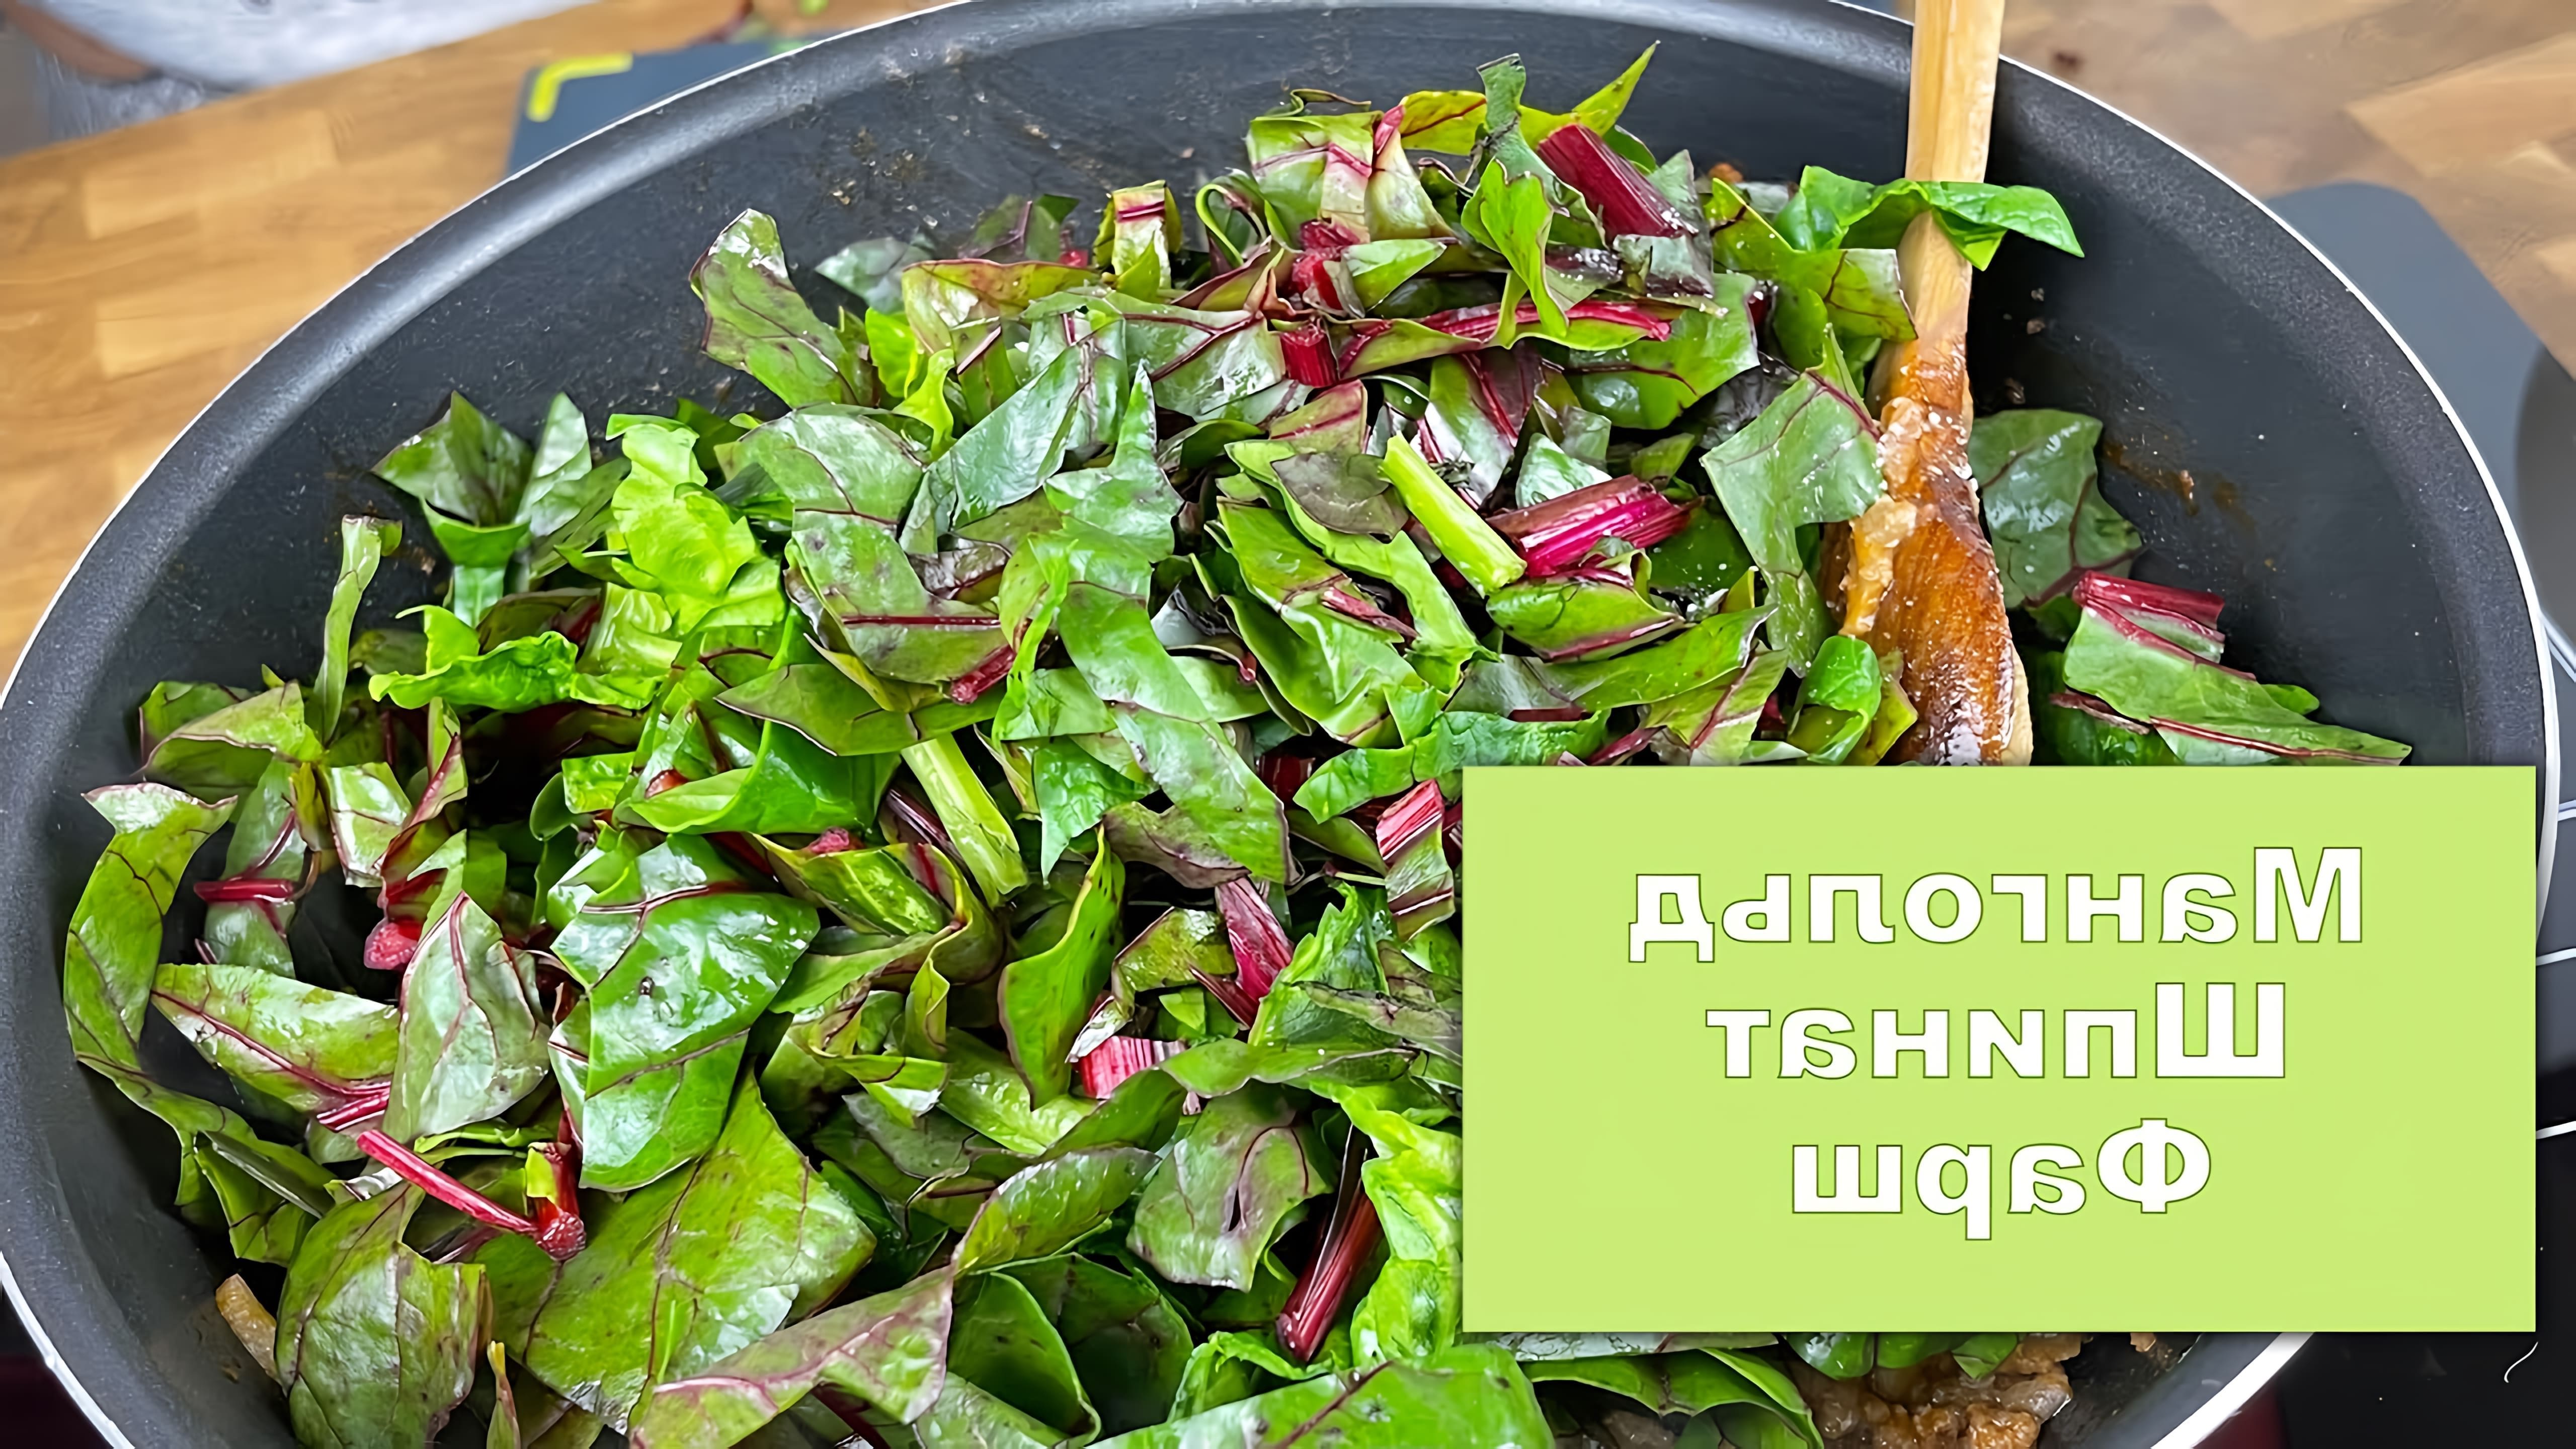 В этом видео демонстрируется процесс приготовления турецкого блюда с фаршем, мангольдом (листьями свеклы) и шпинатом